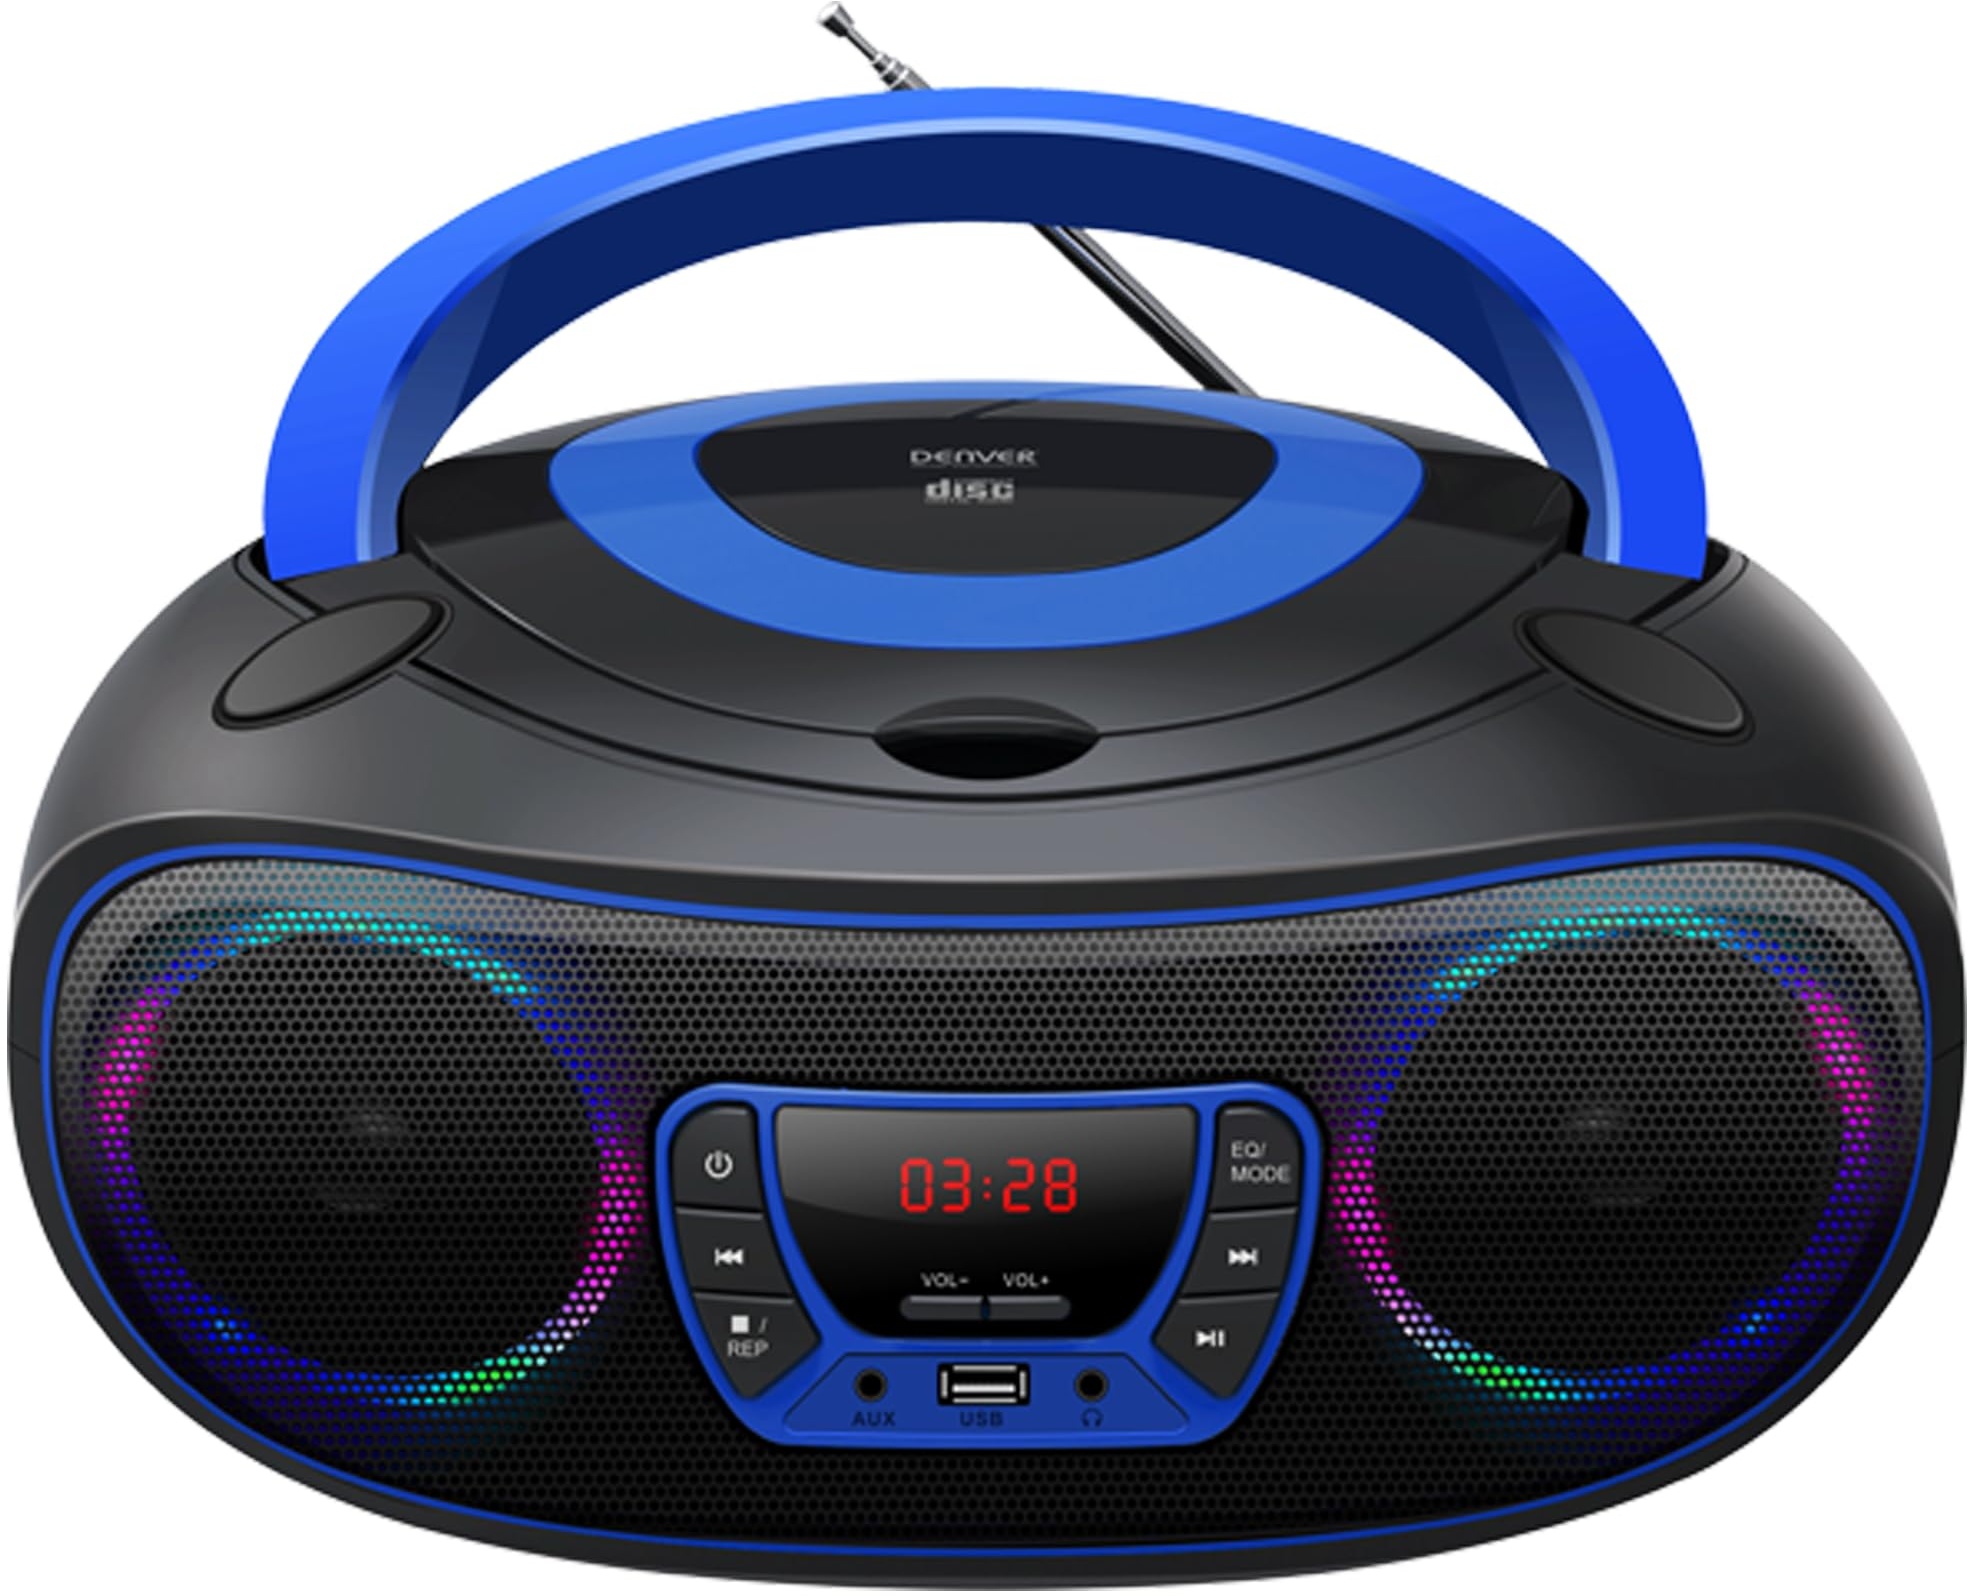 Denver TCL212BT Radio mit Bluetooth, Bluetooth Radio mit Lichteffekte, Tragbarer CD player, AUX, USB, Blau